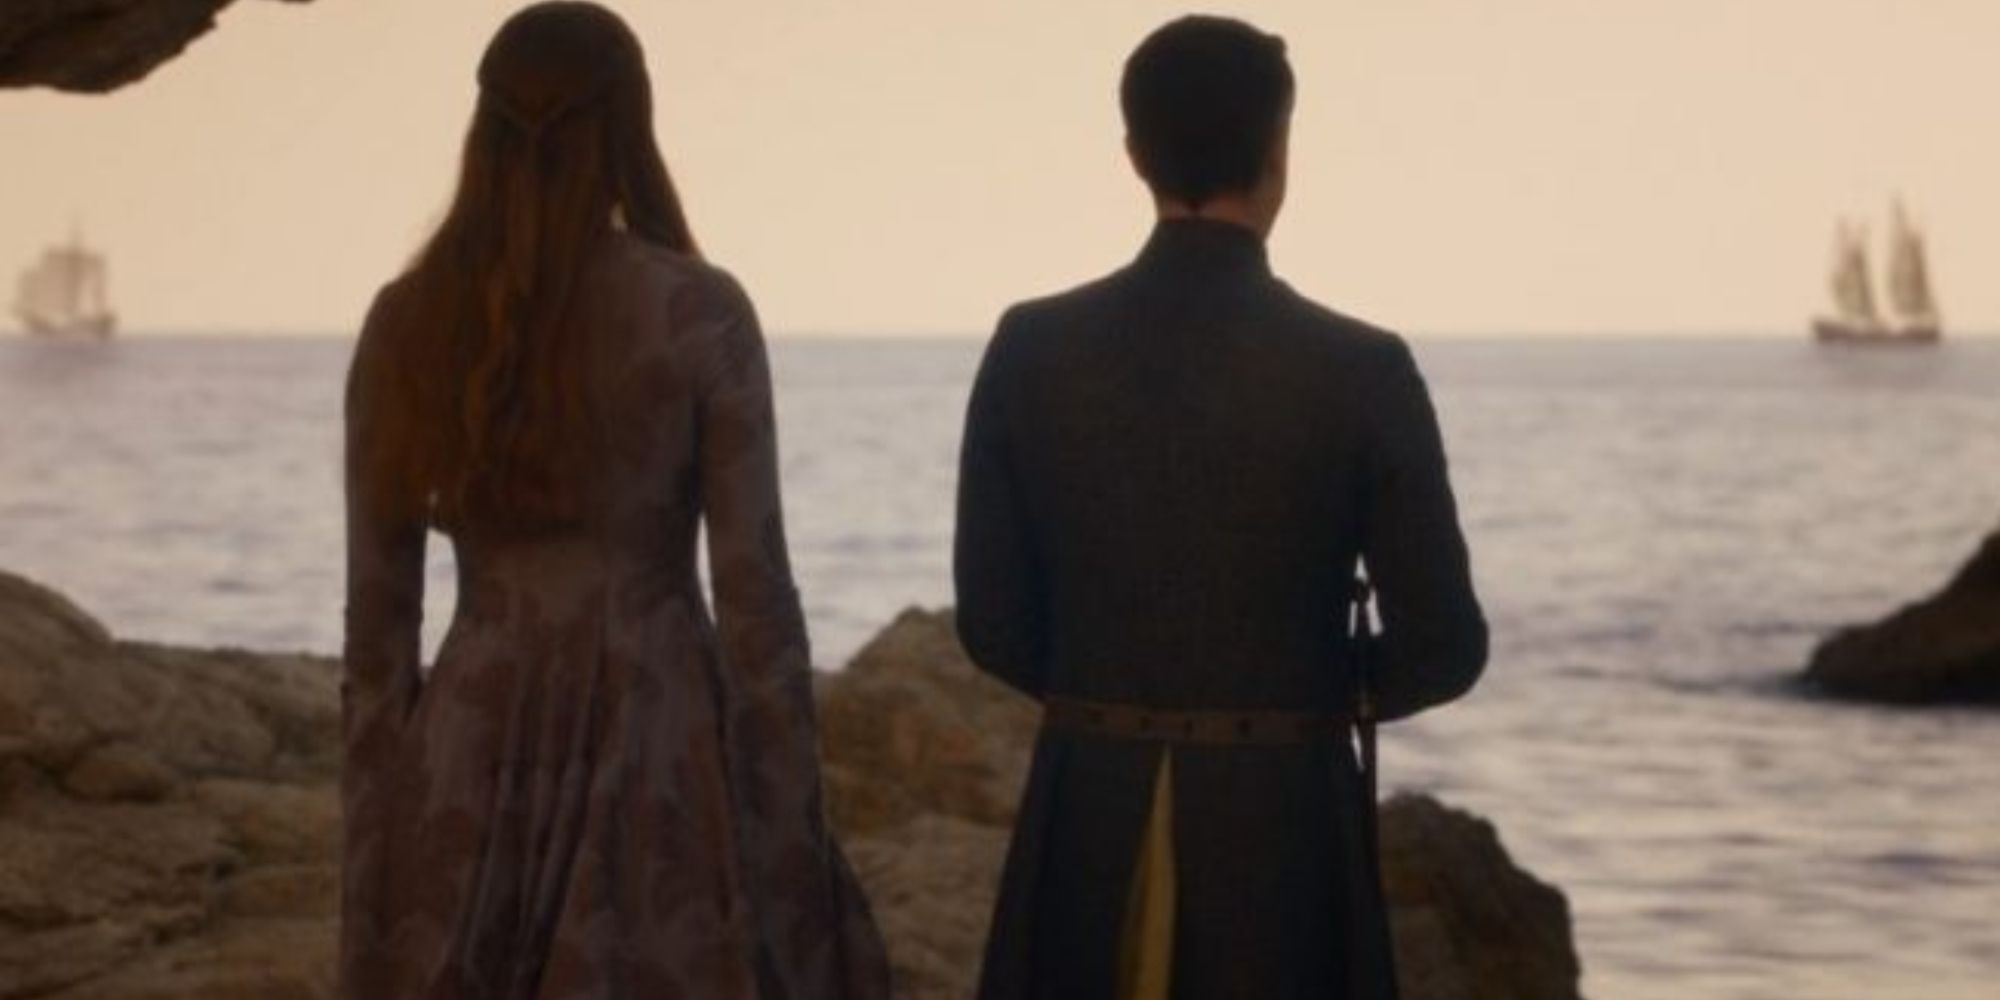 Sansa and Littlefinger at King's Landing harbor in Game of Thrones